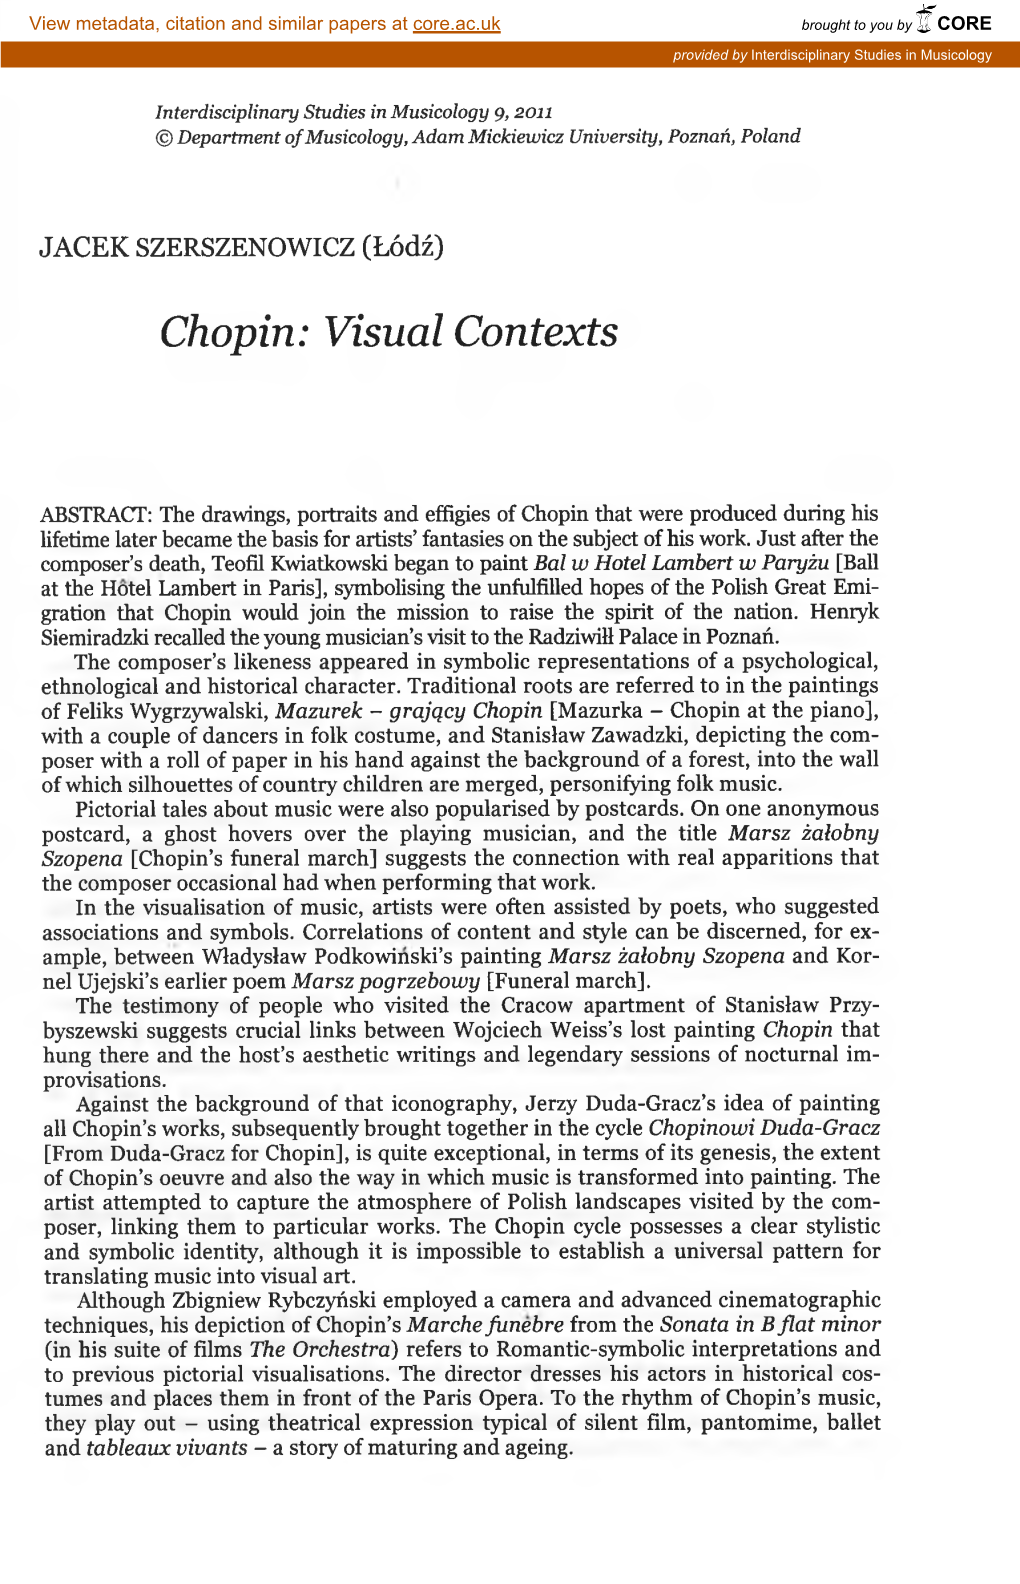 Chopin: Visual Contexts